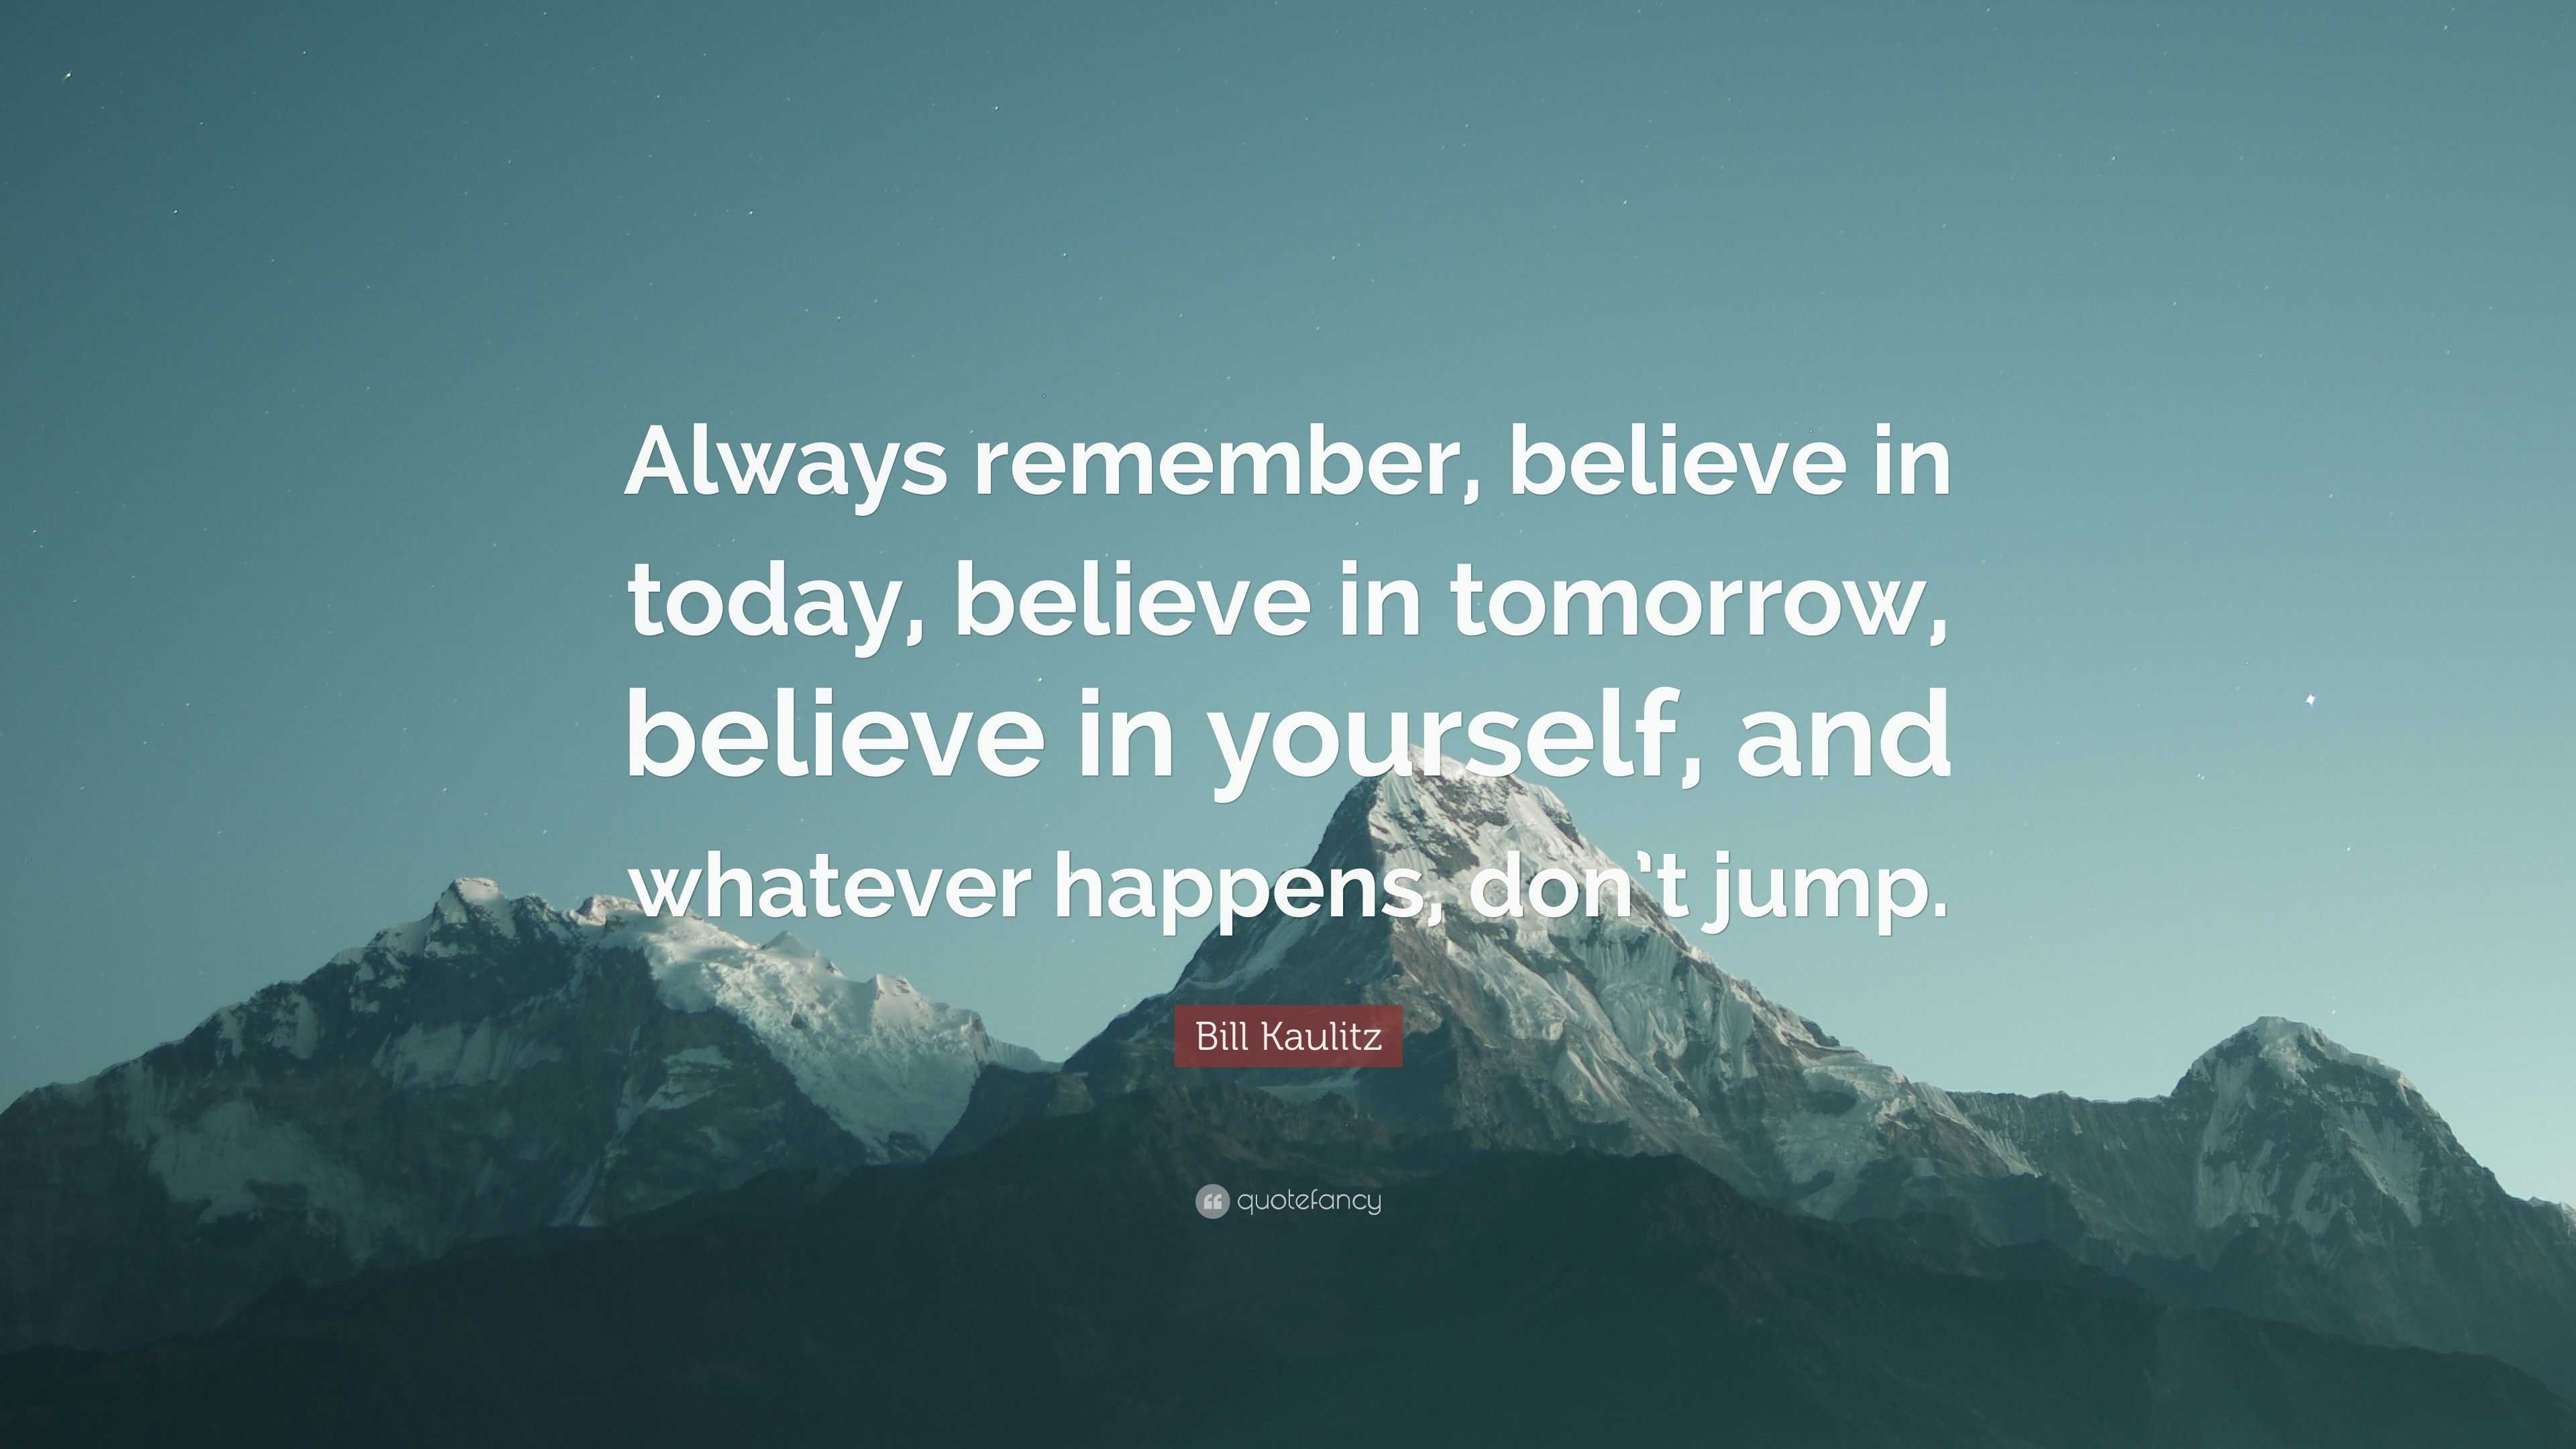 Bill Kaulitz Quote: “Always remember, believe in today, believe in ...